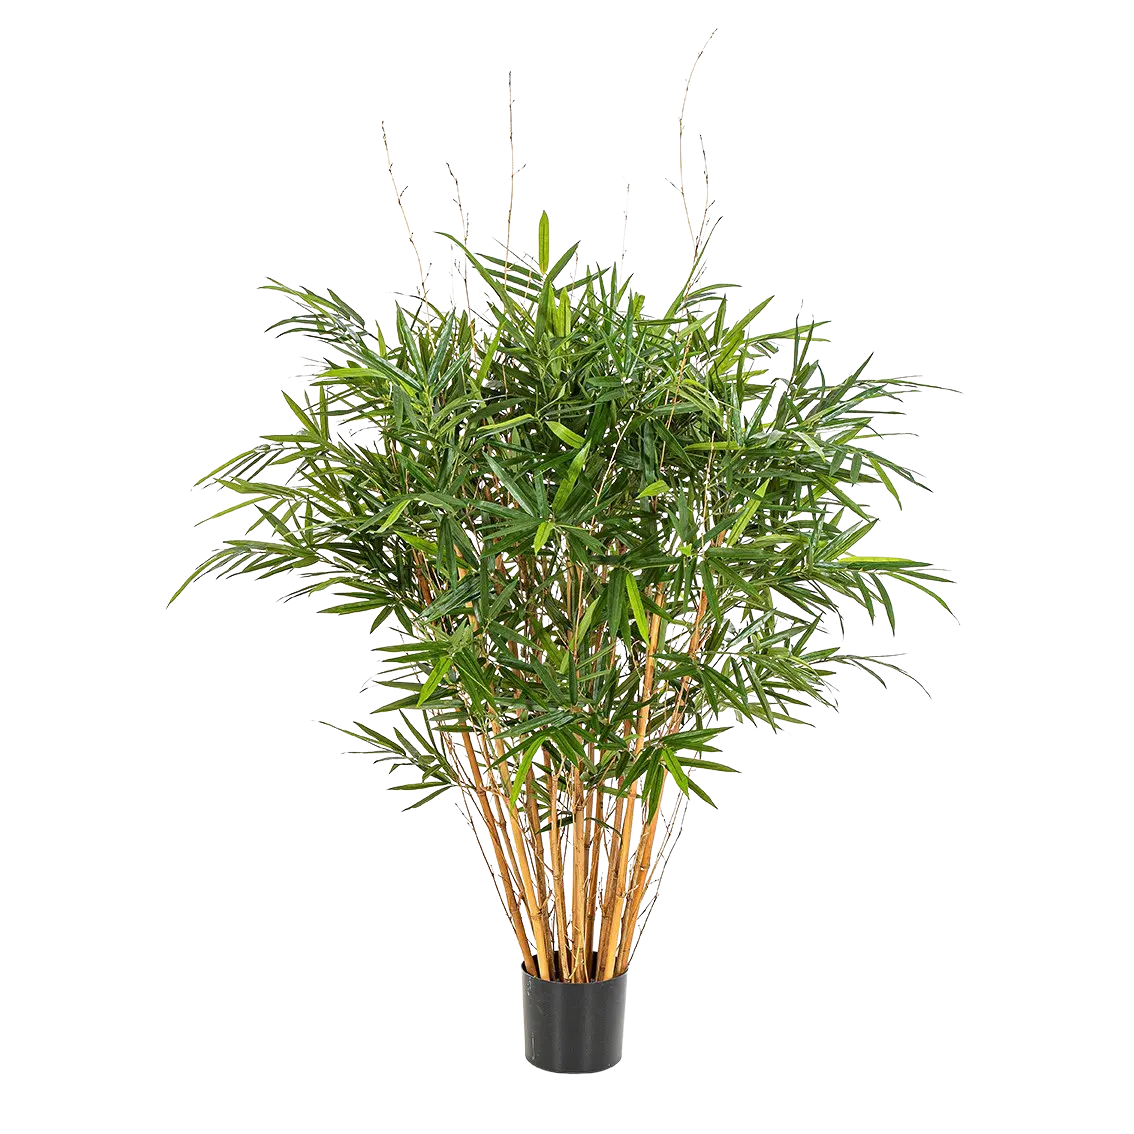 Künstlicher Bambus - Marleen auf transparentem Hintergrund mit echt wirkenden Kunstblättern. Diese Kunstpflanze gehört zur Gattung/Familie der "Bambuse" bzw. "Kunst-Bambuse".